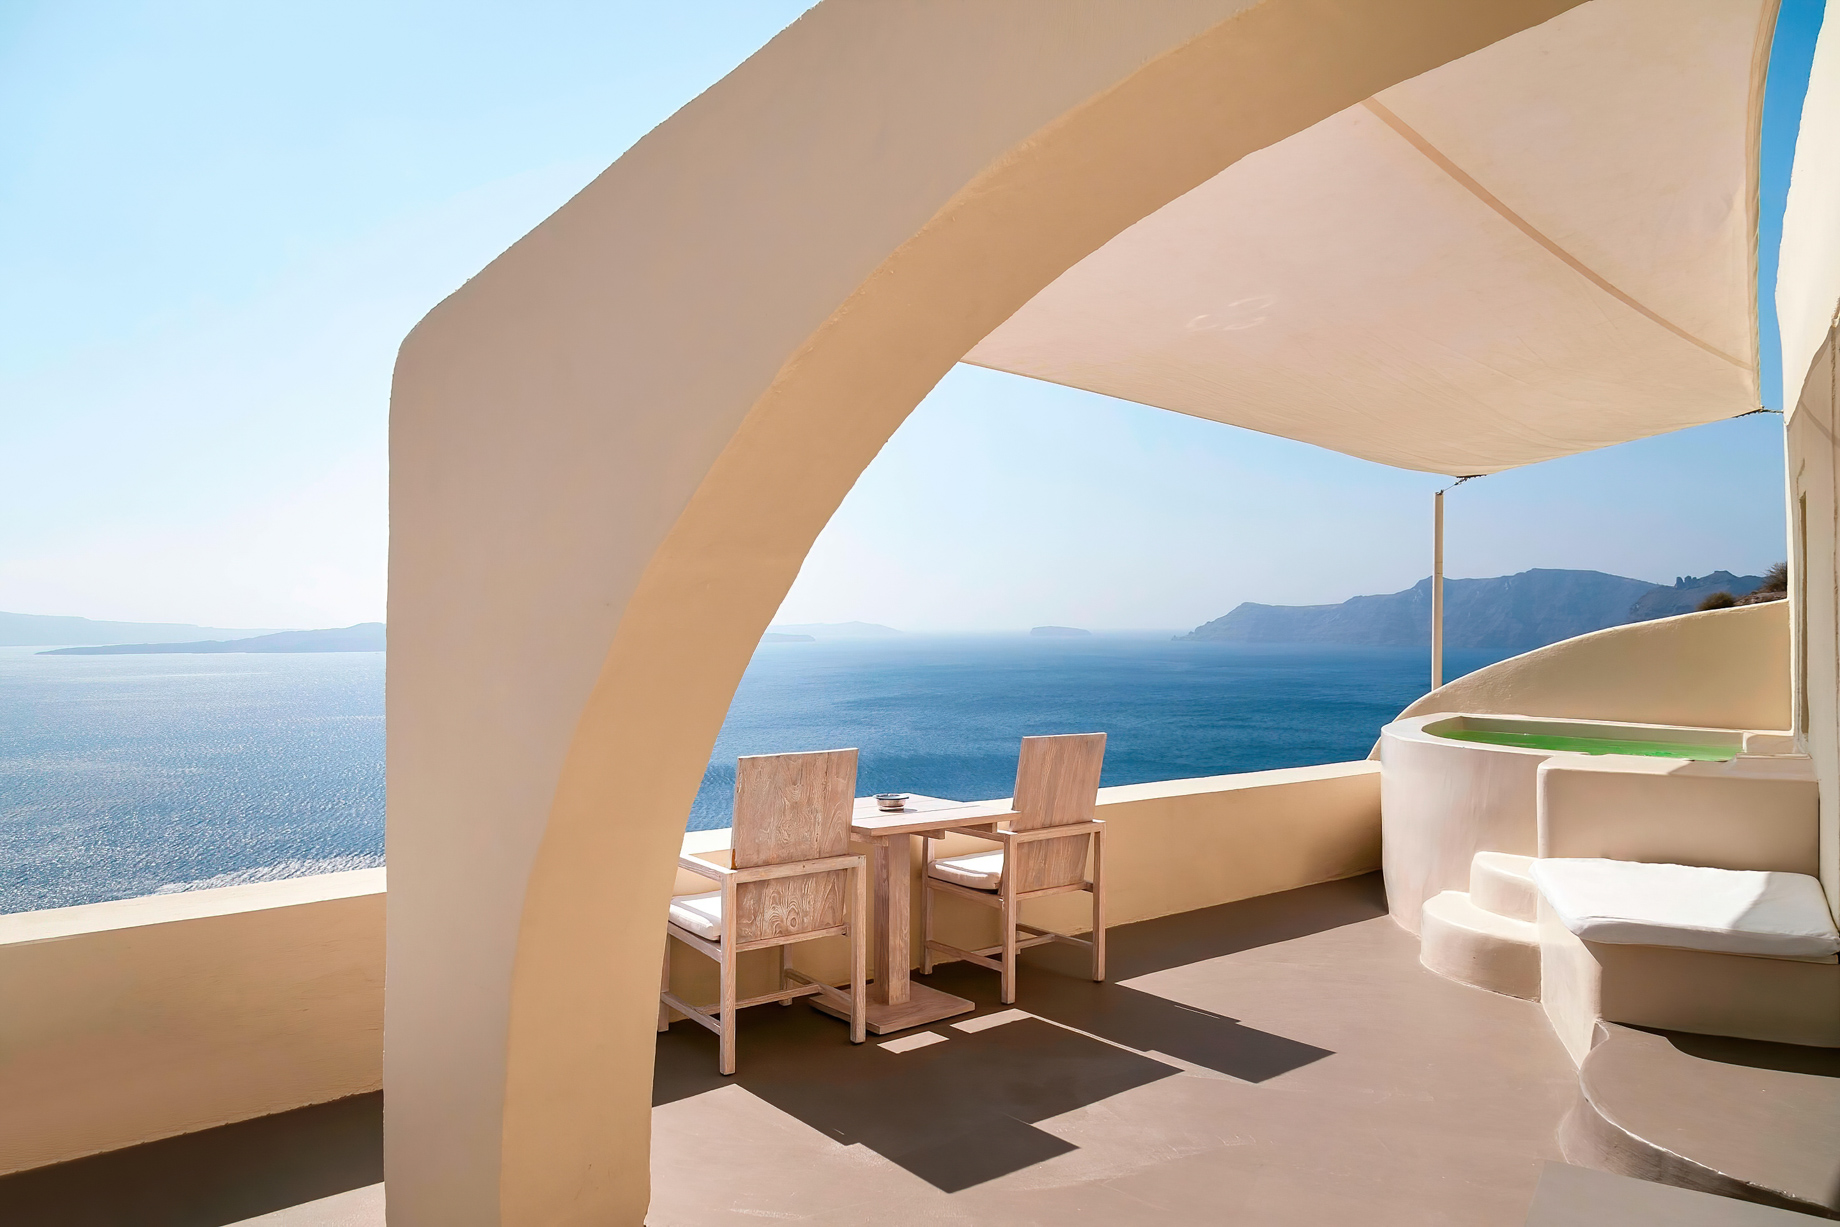 Mystique Hotel Santorini – Oia, Santorini Island, Greece - Private Terrace with Jacuzzi